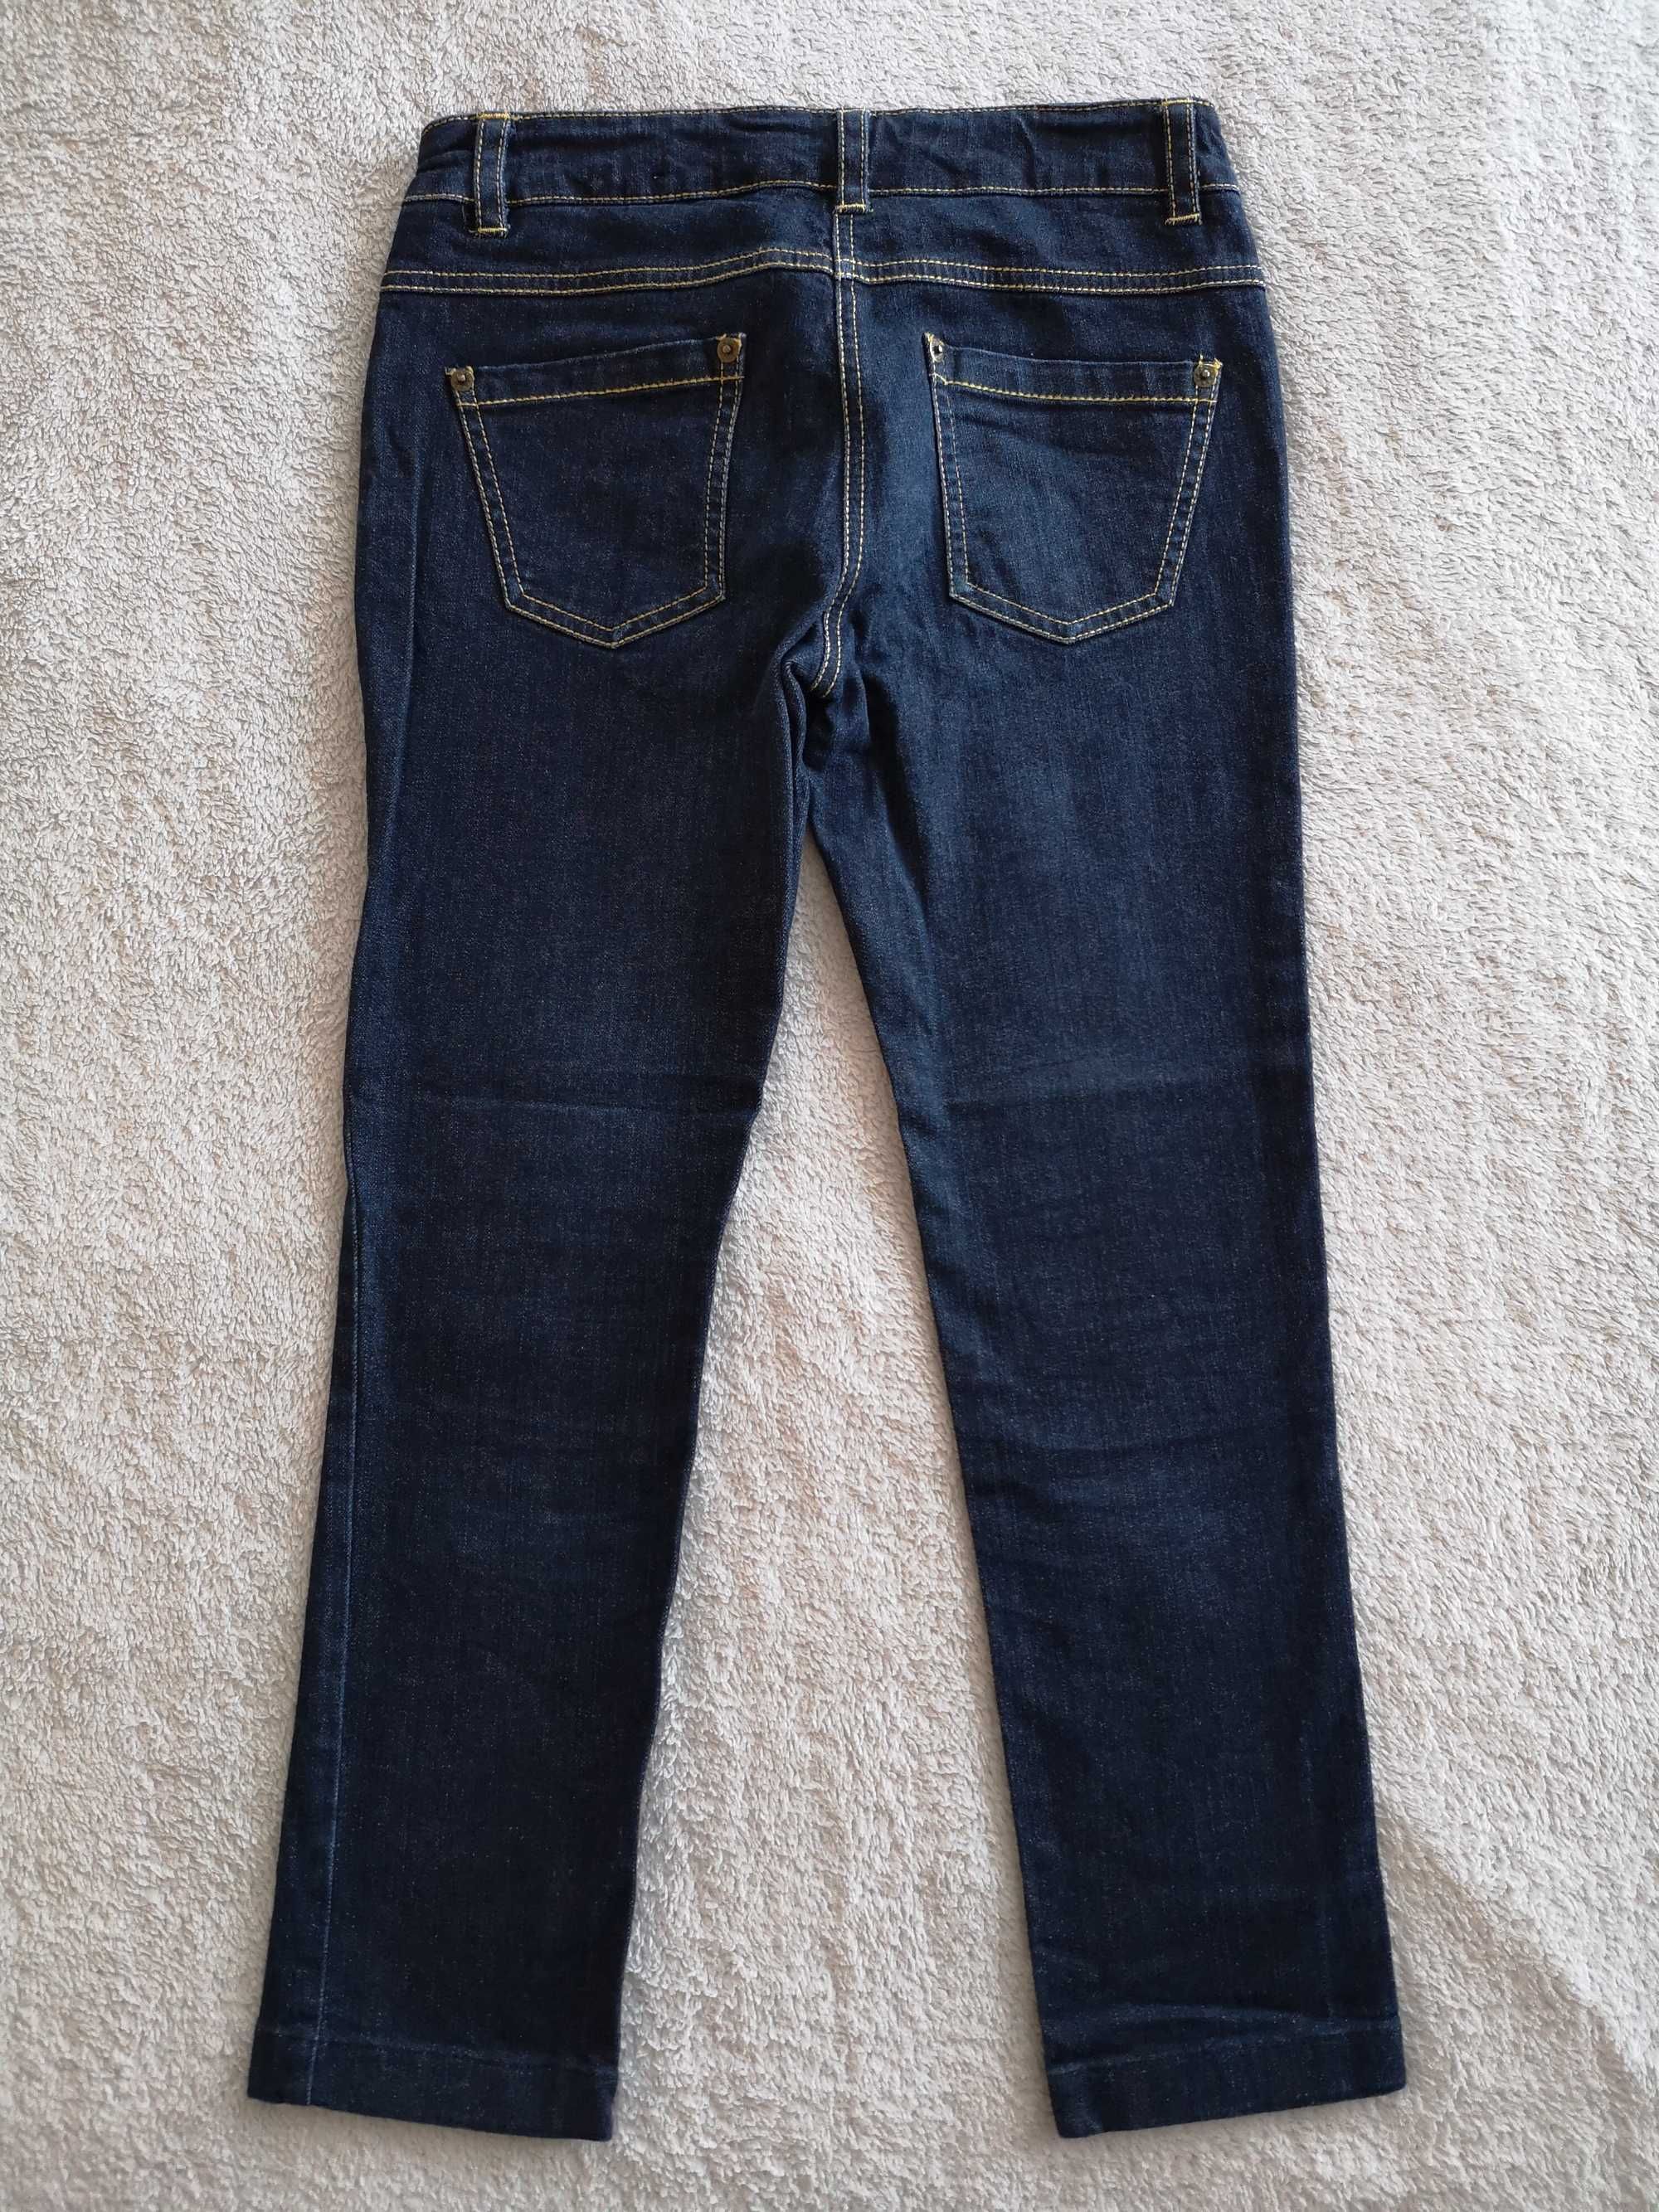 Granatowe spodnie jeansowe jeansy Fiftyeight Conbipel 146 - 152 j nowe